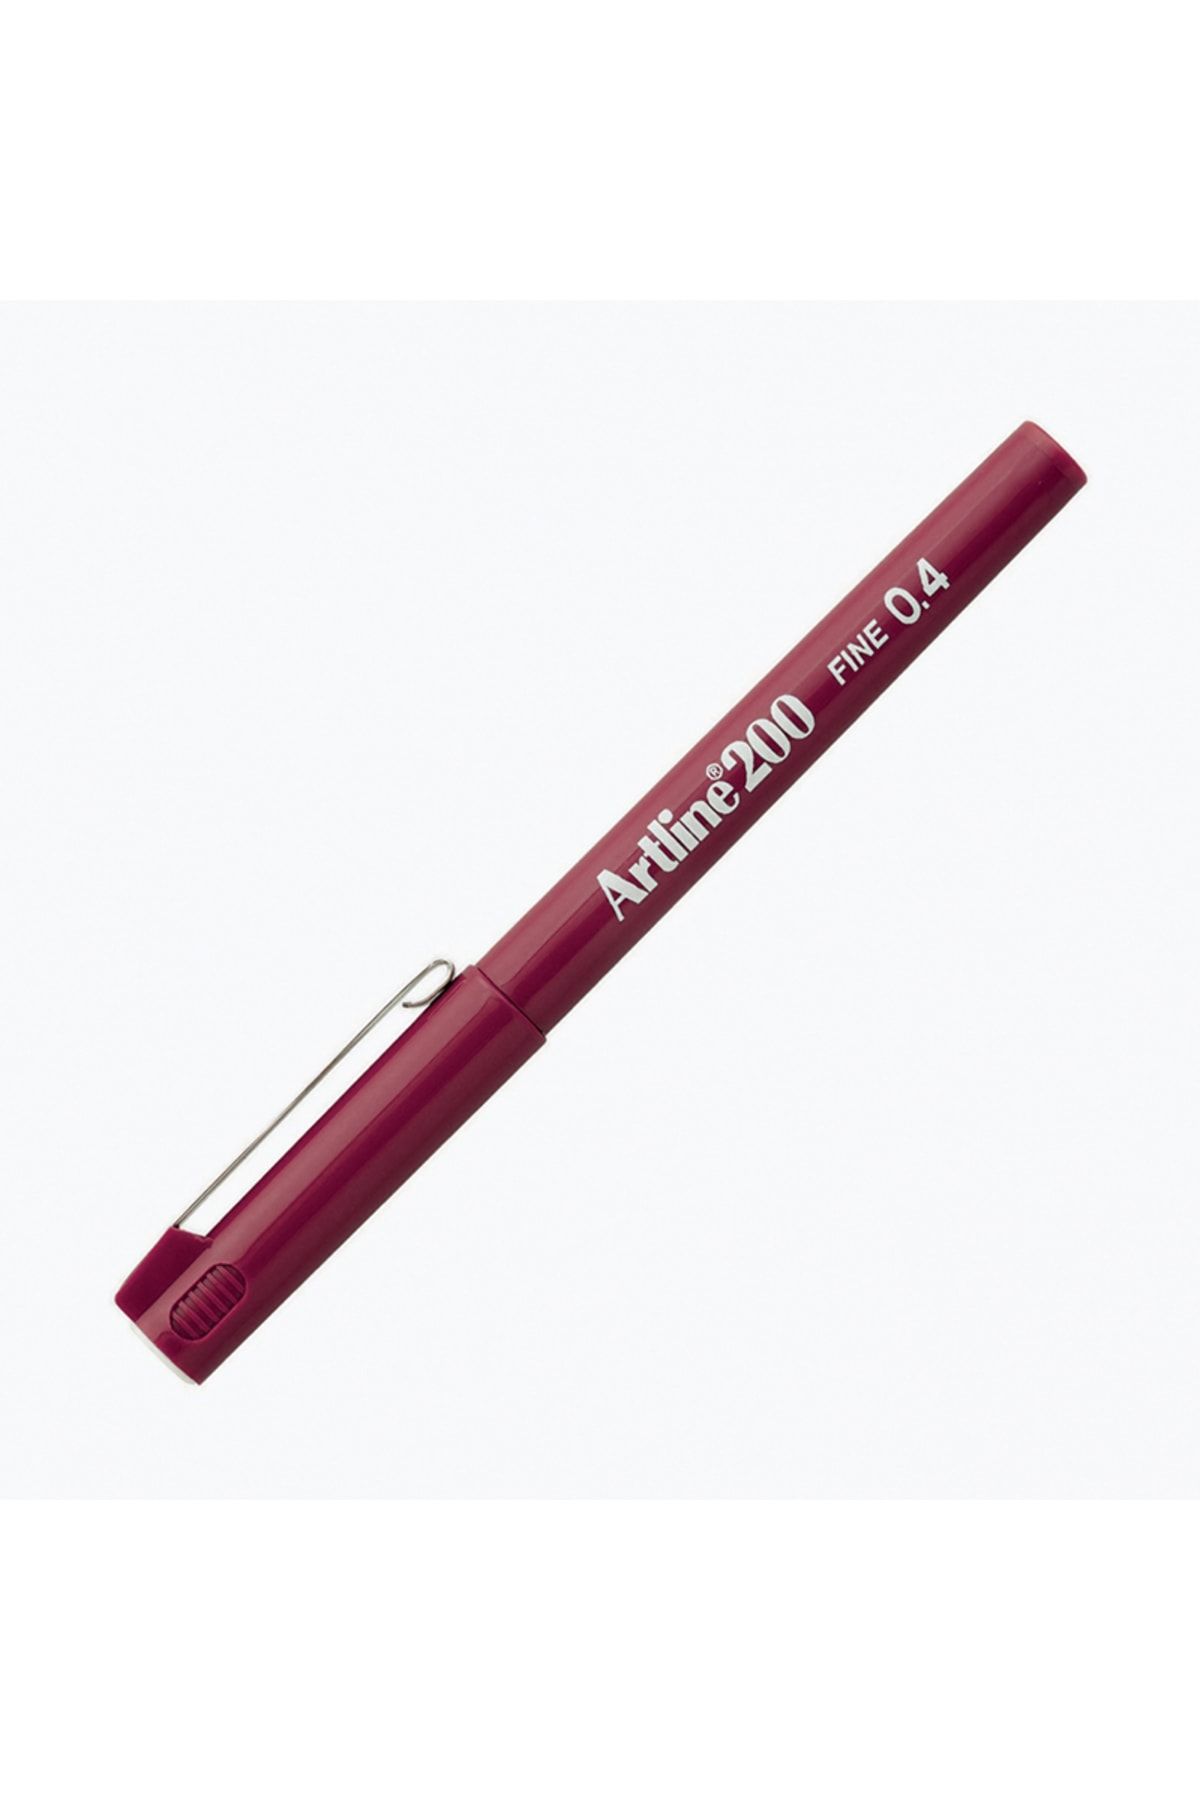 artline 200 Fineliner Yazı Ve Çizim Kalemi 0,4mm Koyu Kırmızı